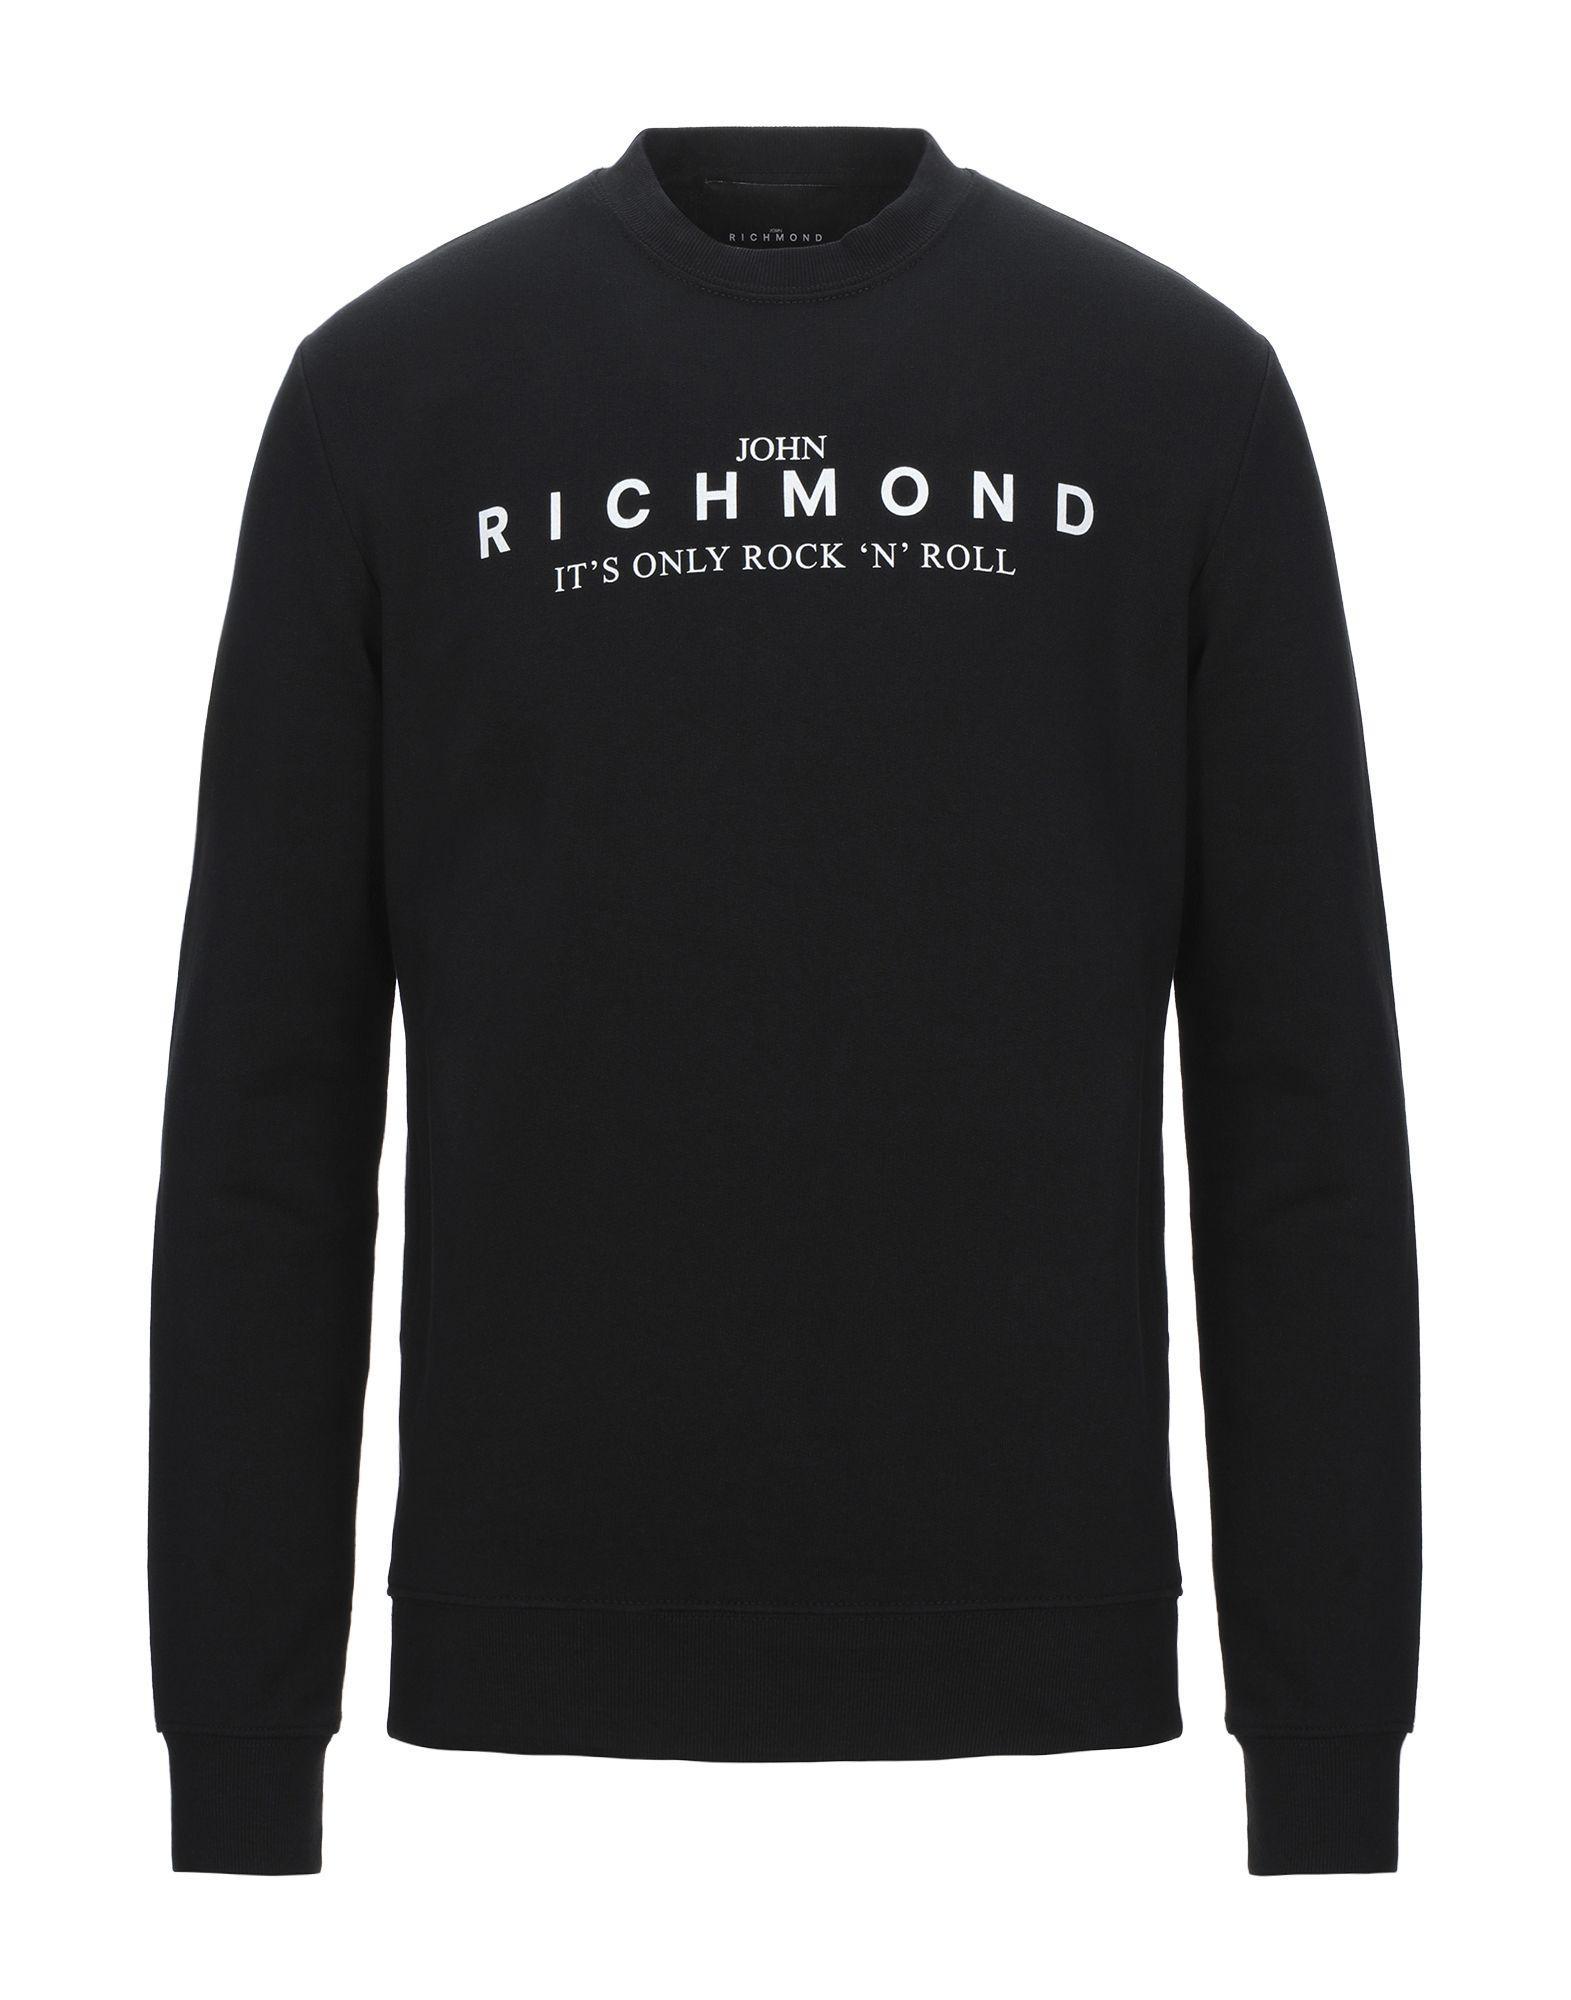 John Richmond Fleece Sweatshirt in Black for Men - Lyst